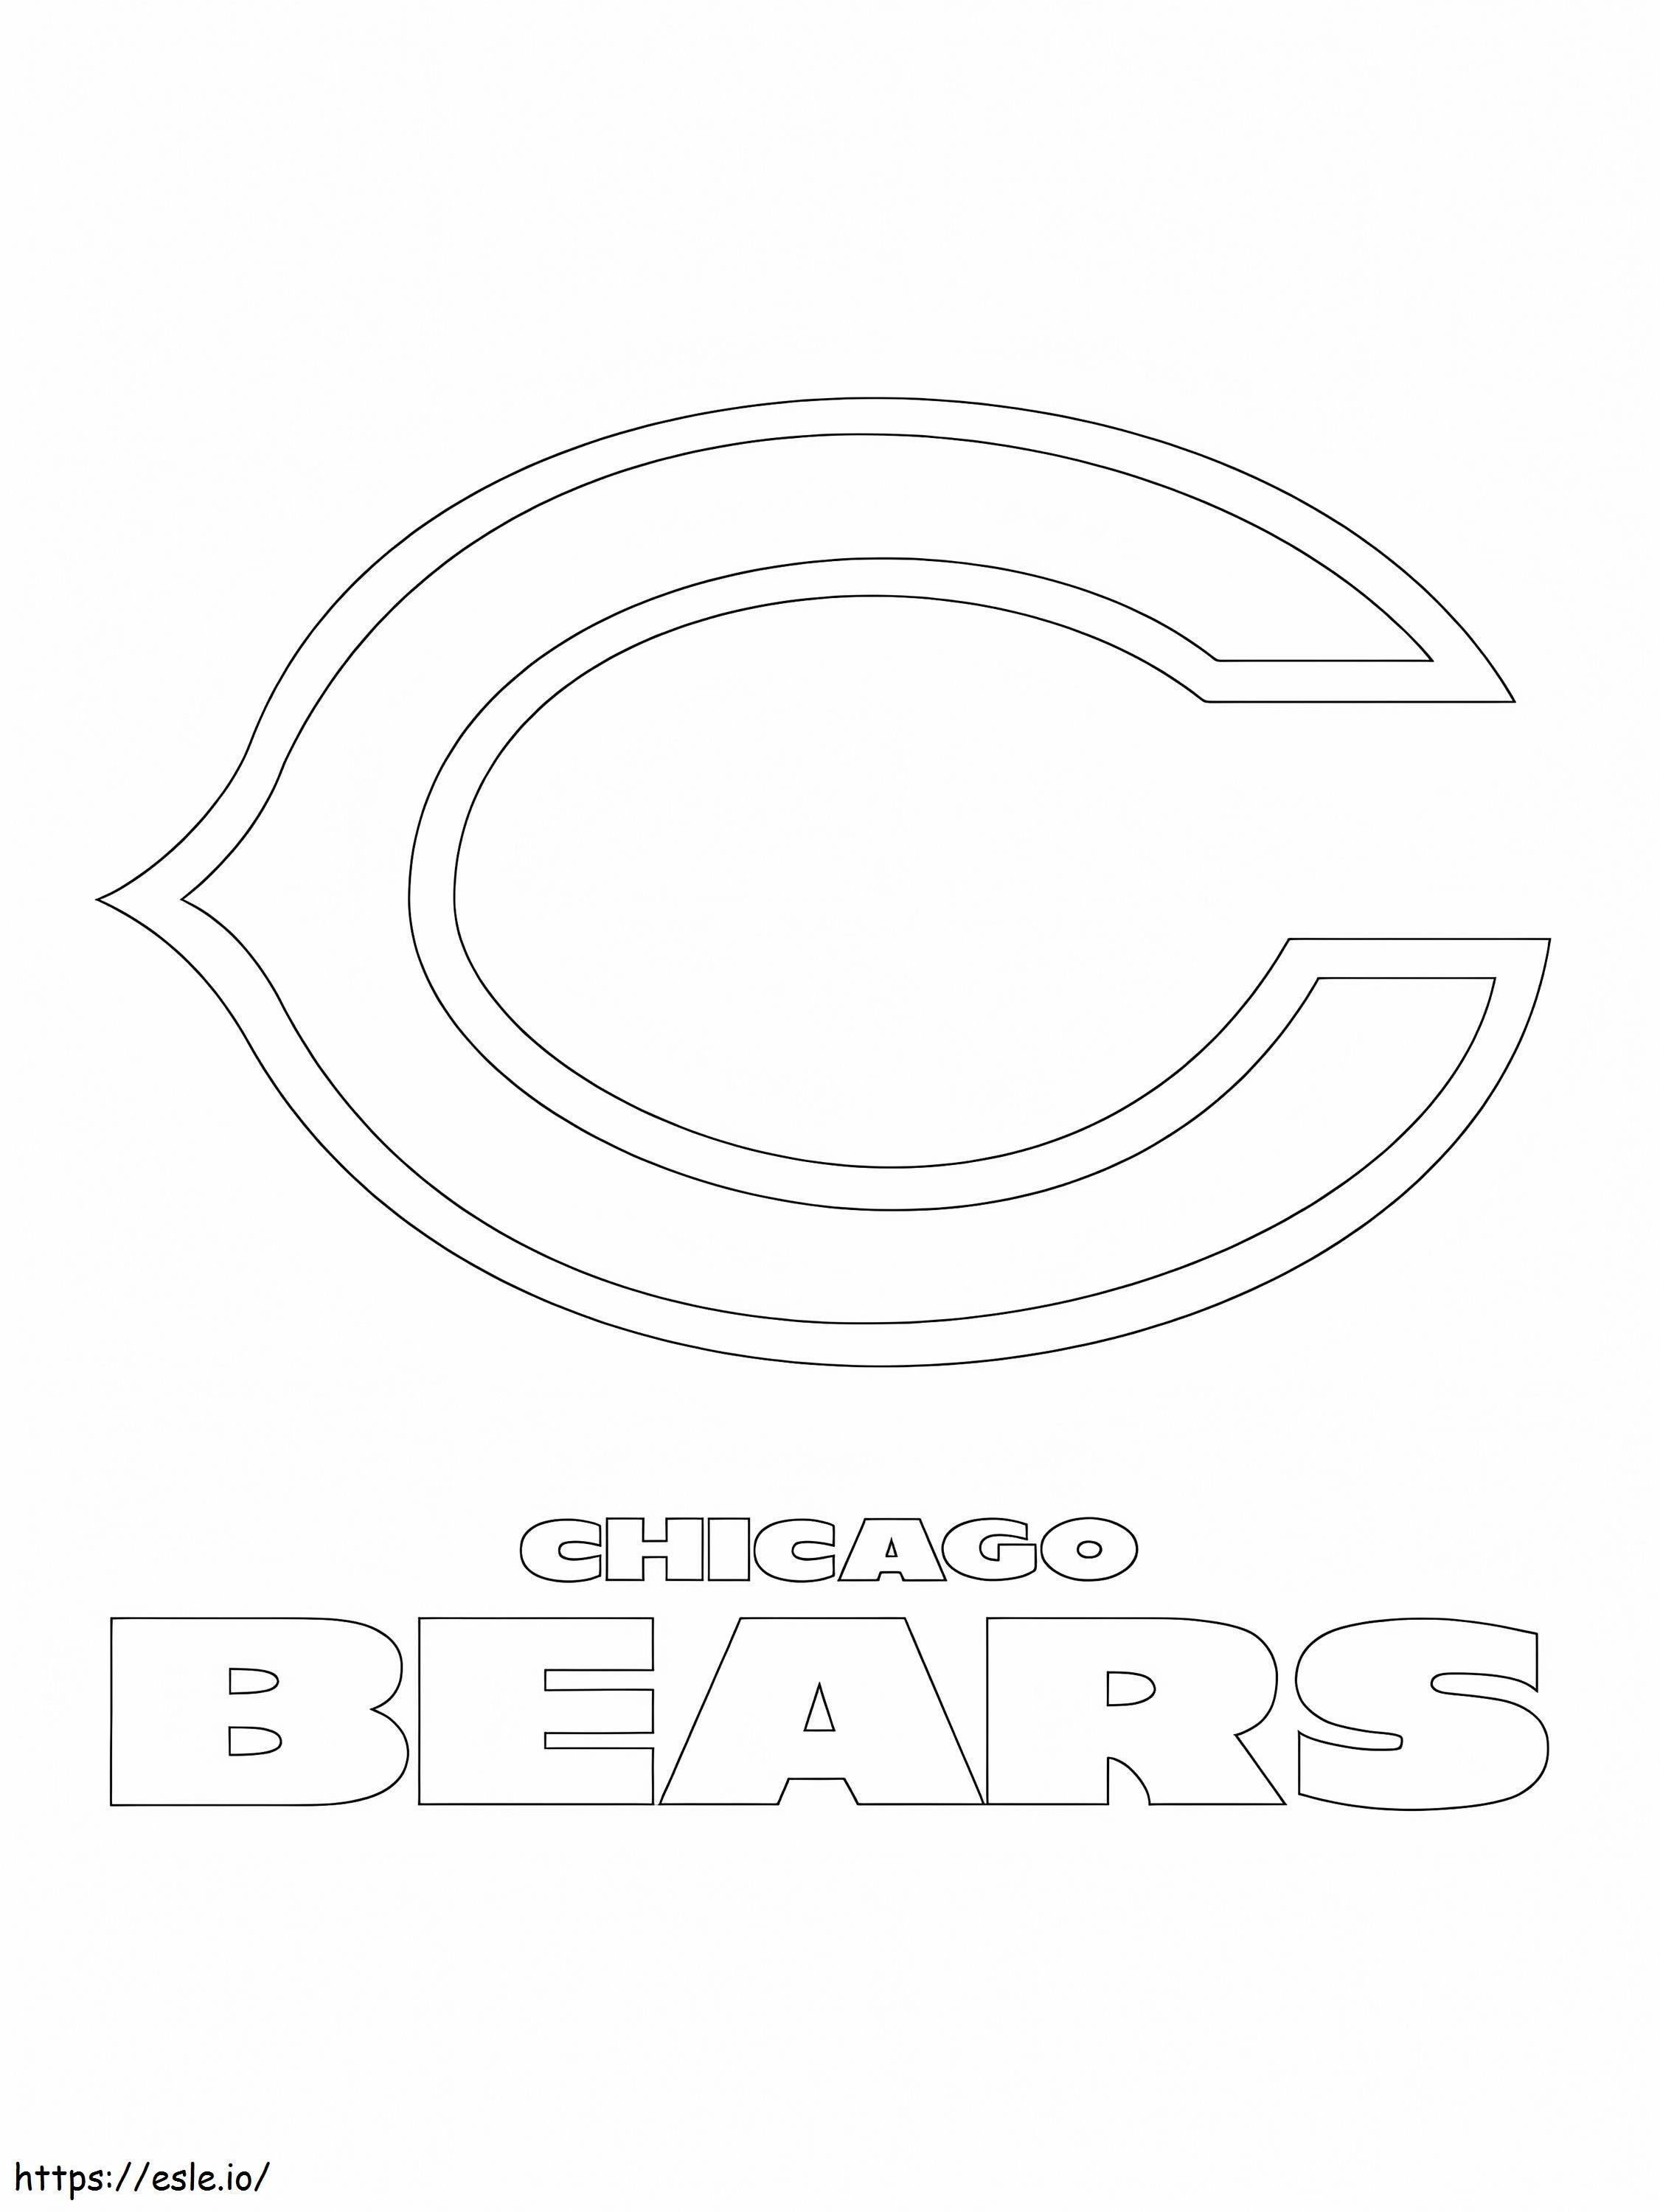 Logotipo de los osos de chicago para colorear